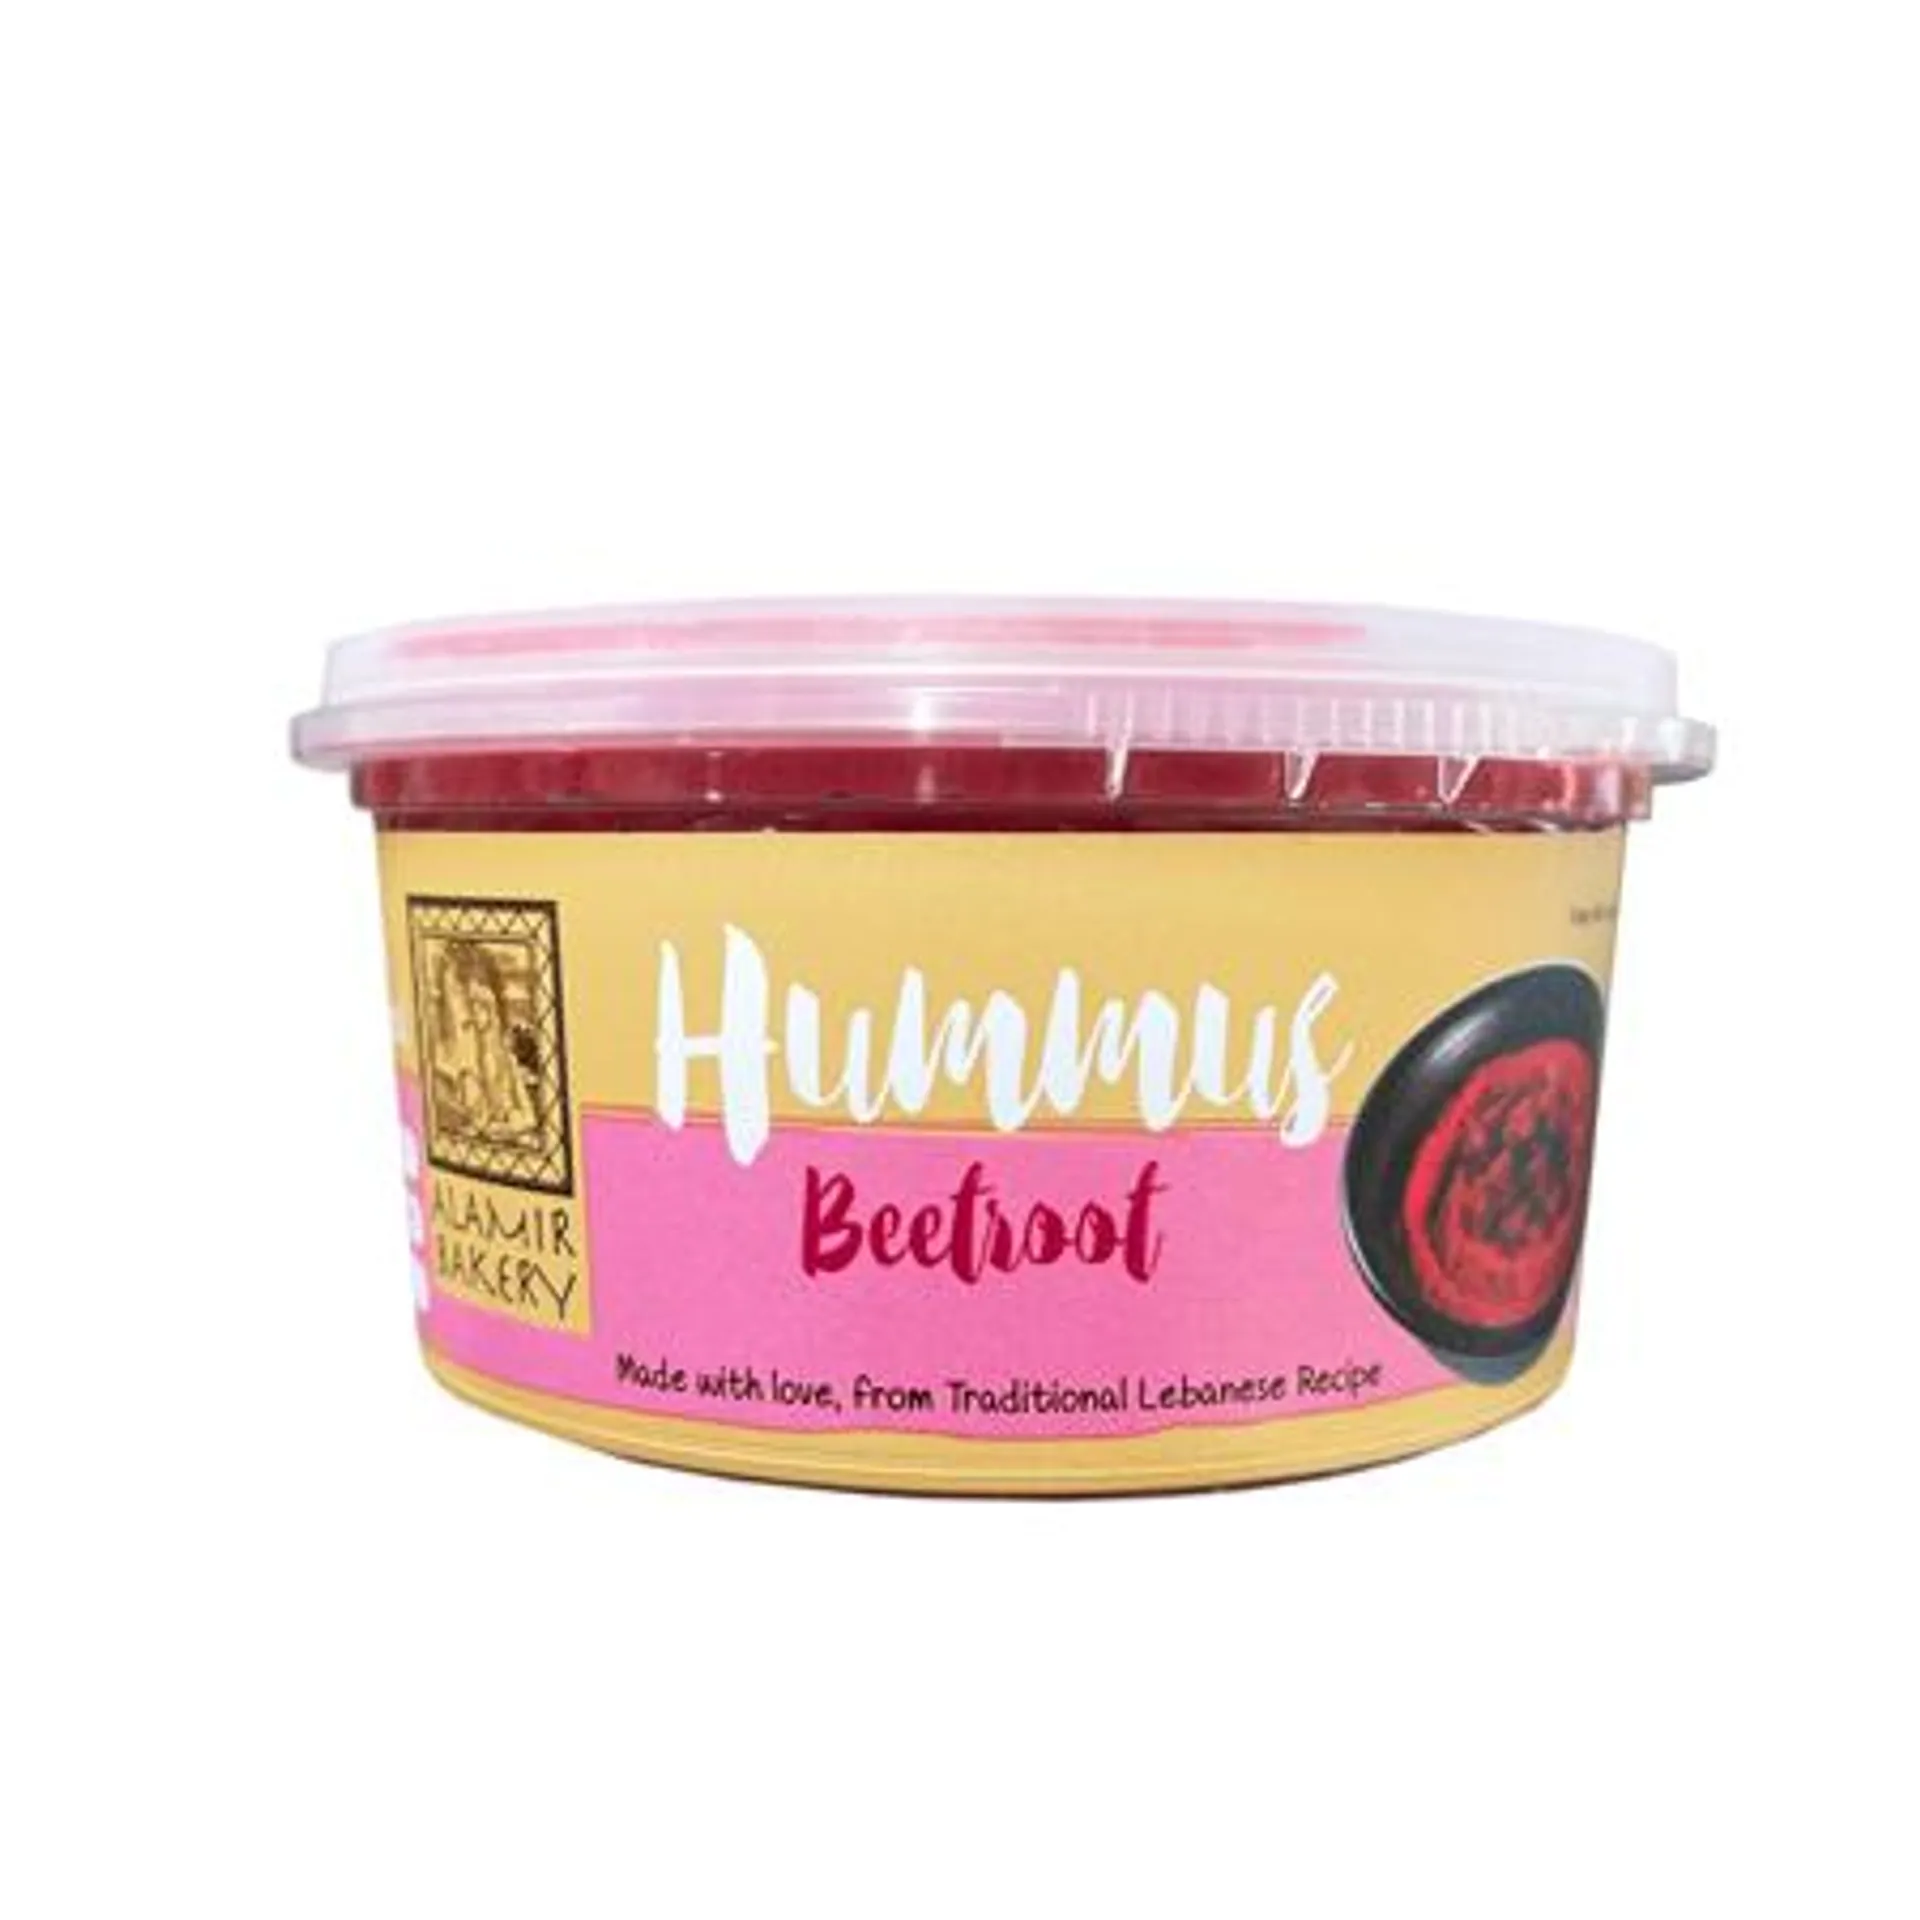 Alamir Bakery Beetroot Hummus